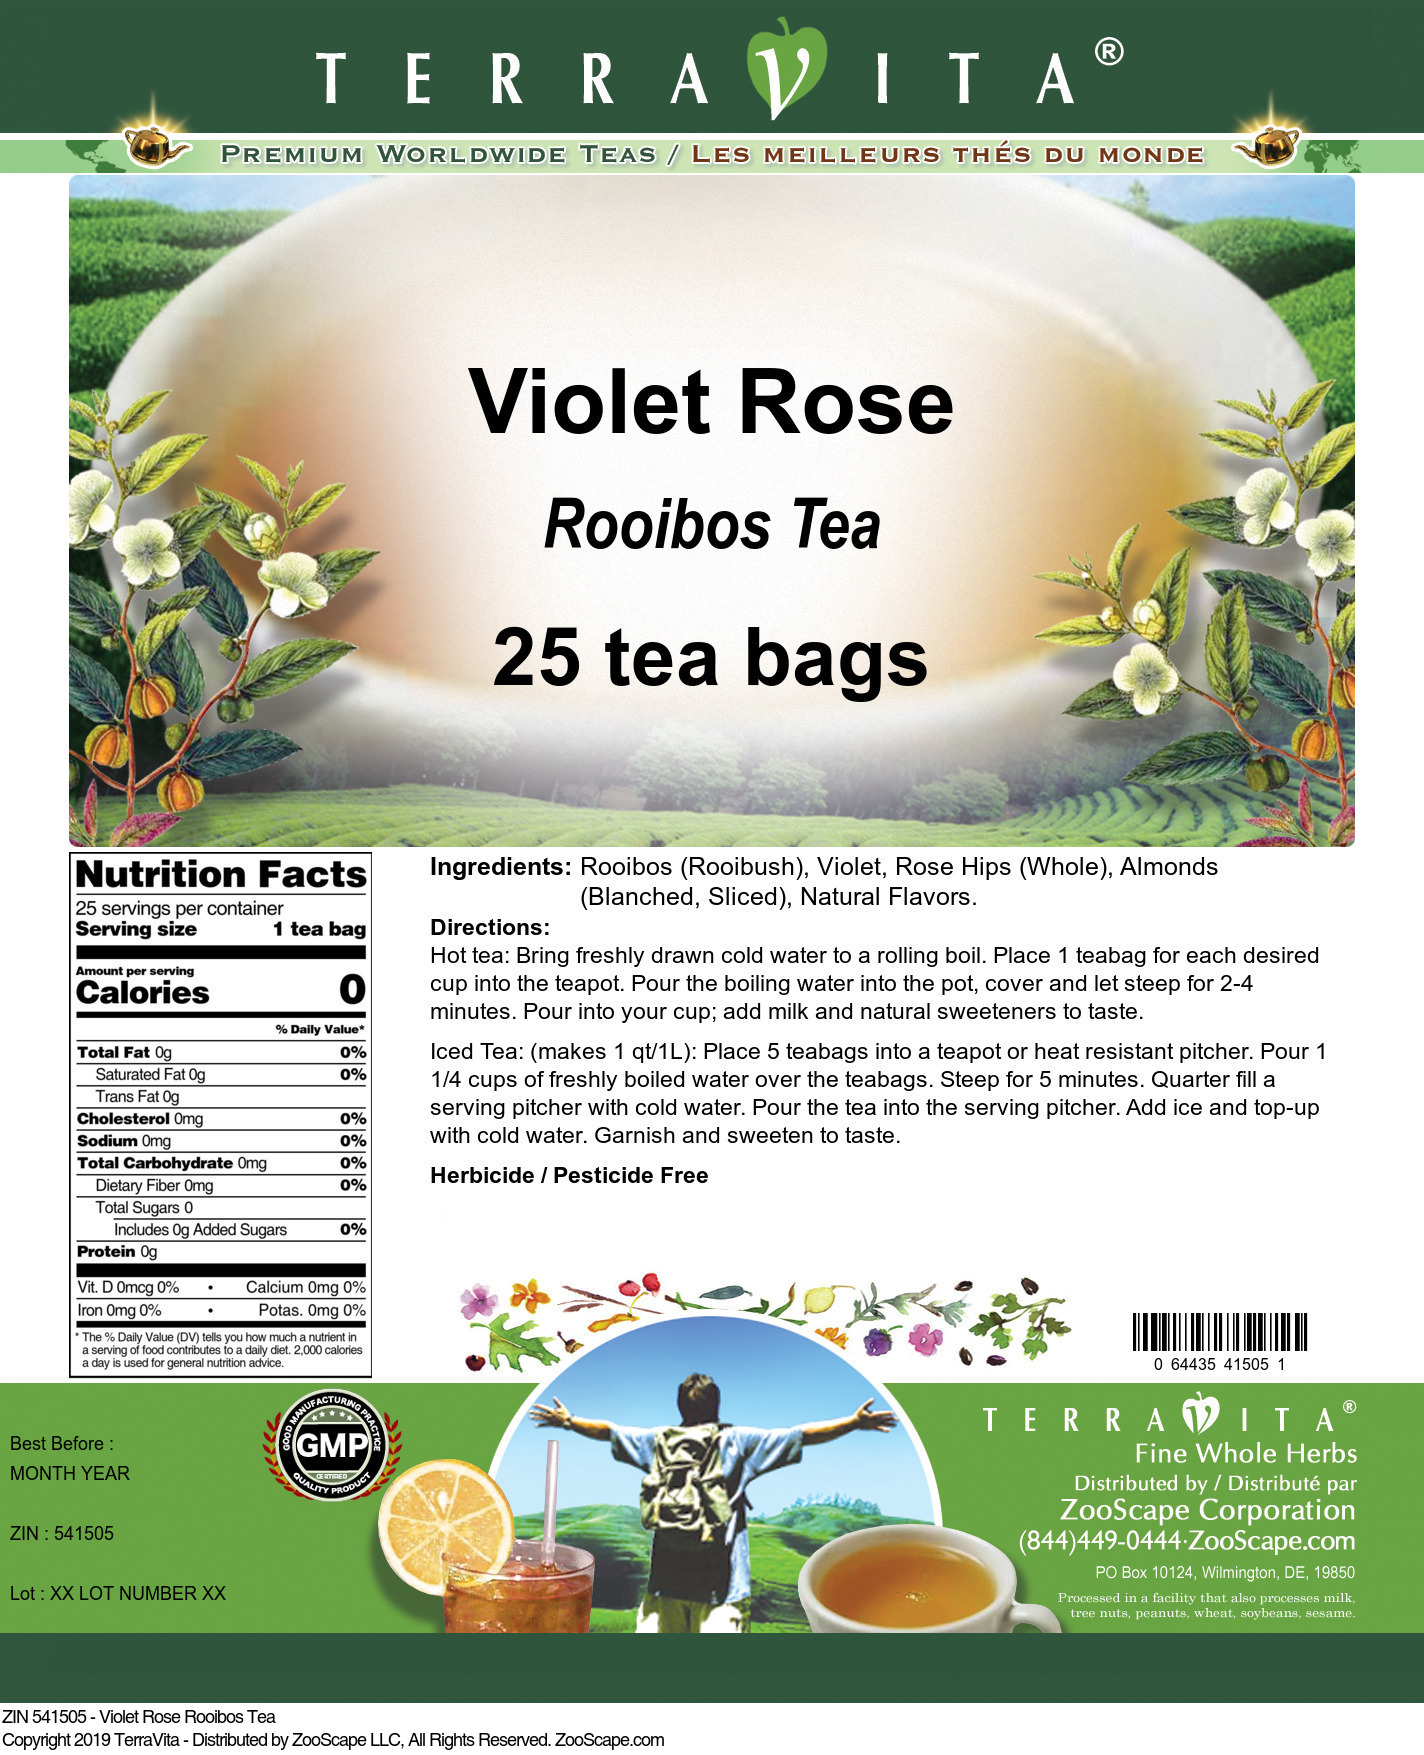 Violet Rose Rooibos Tea - Label